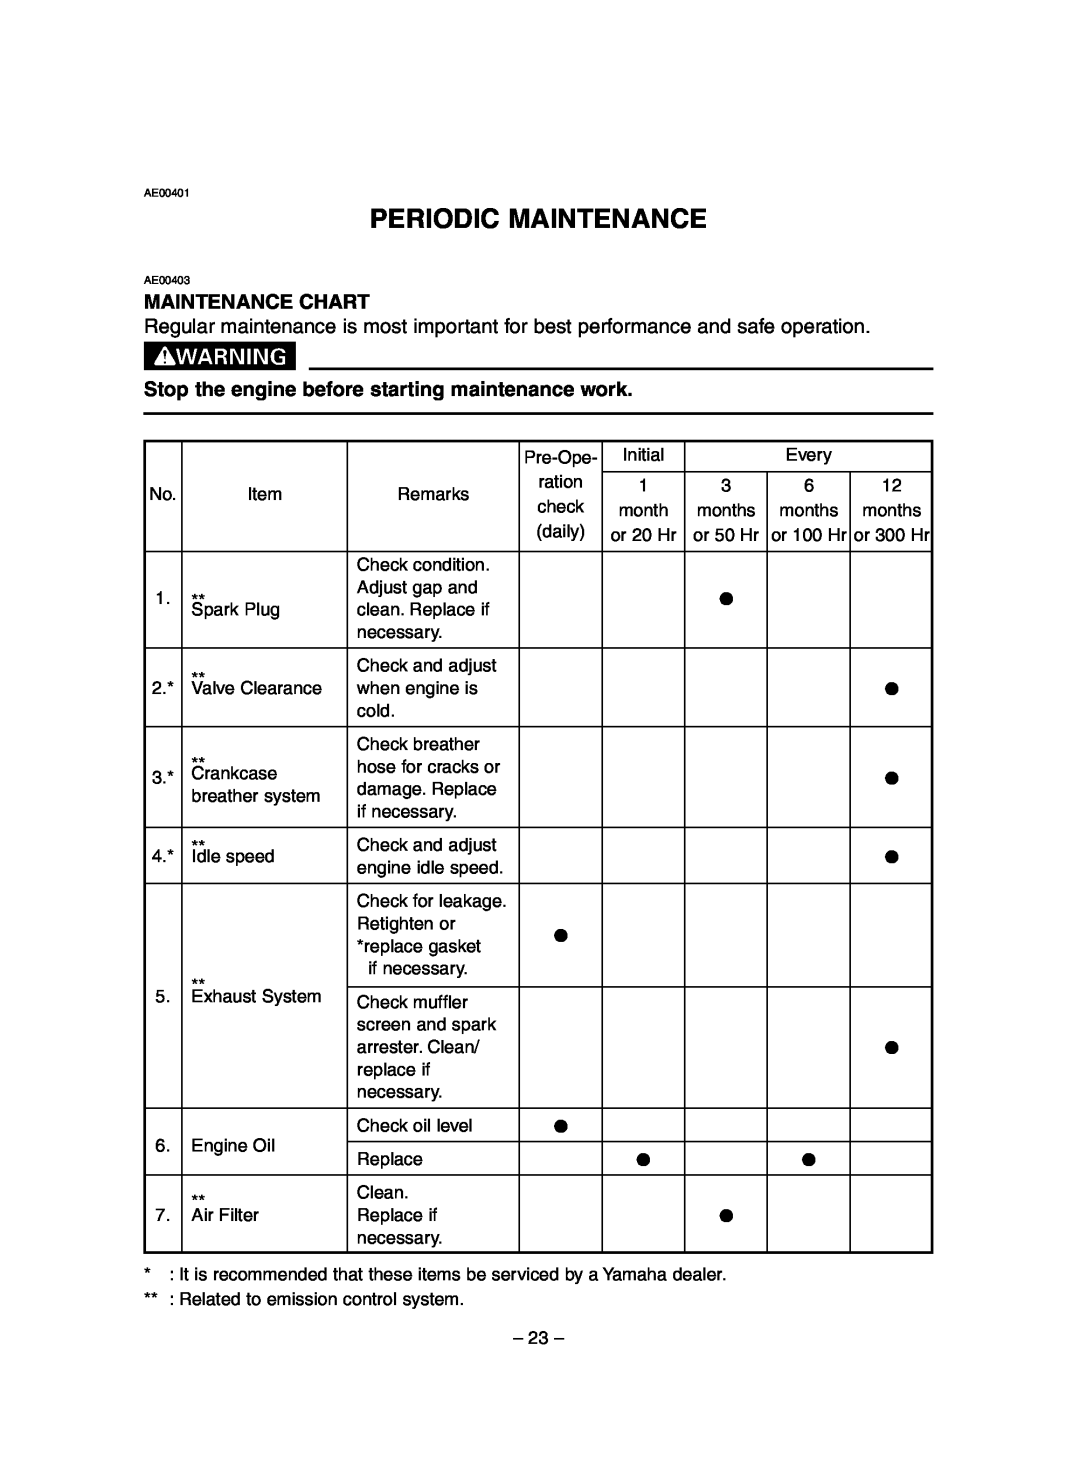 Yamaha EF3000iSE, EF3000iSEB Periodic Maintenance, Maintenance Chart, Stop the engine before starting maintenance work 